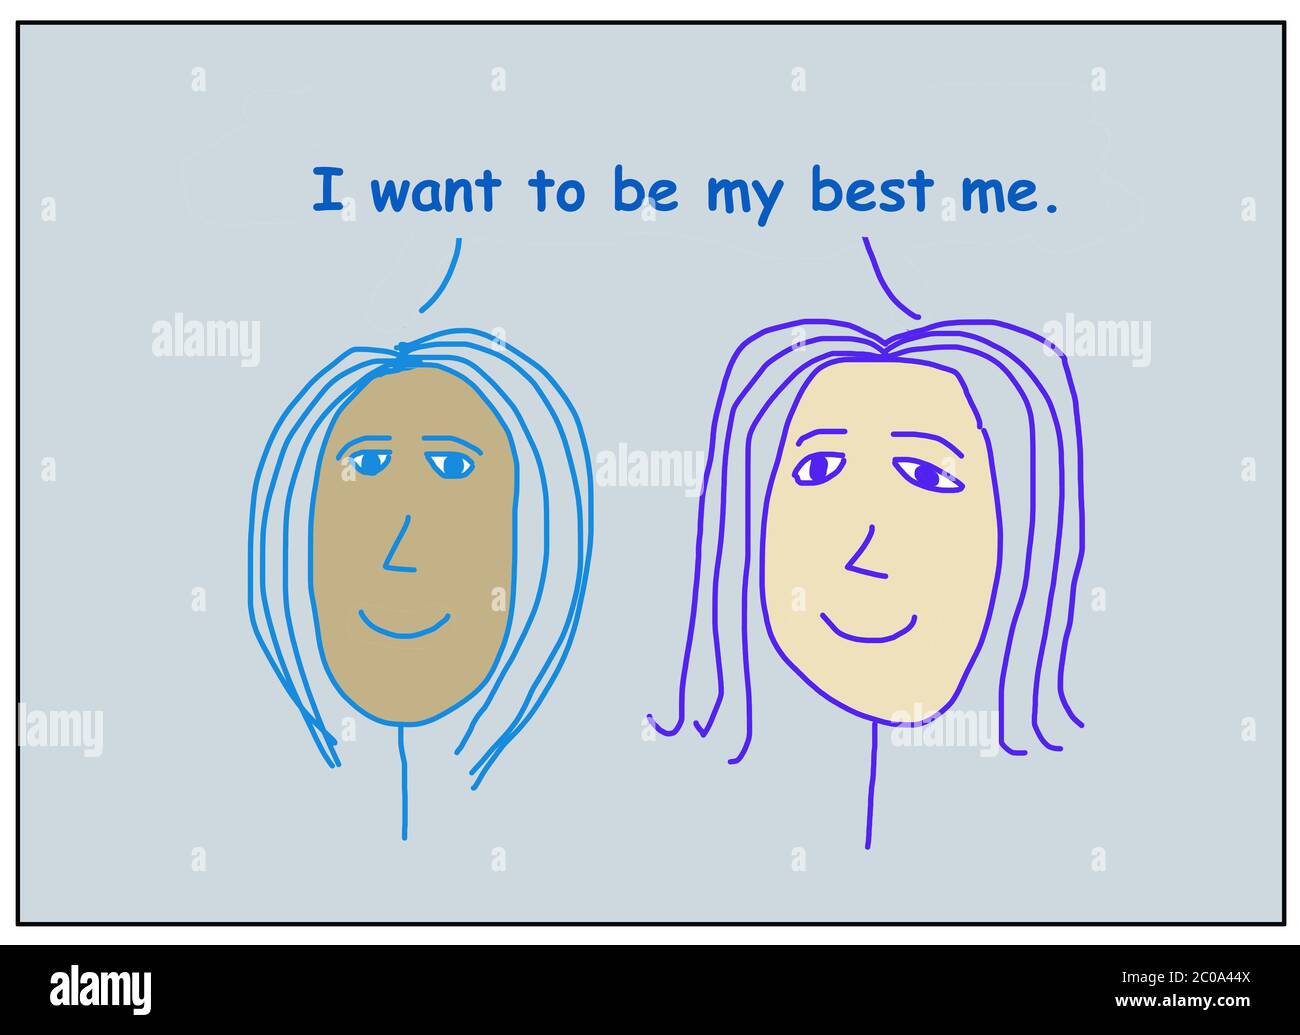 Farbe Cartoon von zwei lächelnden und ethnisch verschiedenen Frauen besagt, dass ich mein Bestes mich sein will. Stockfoto